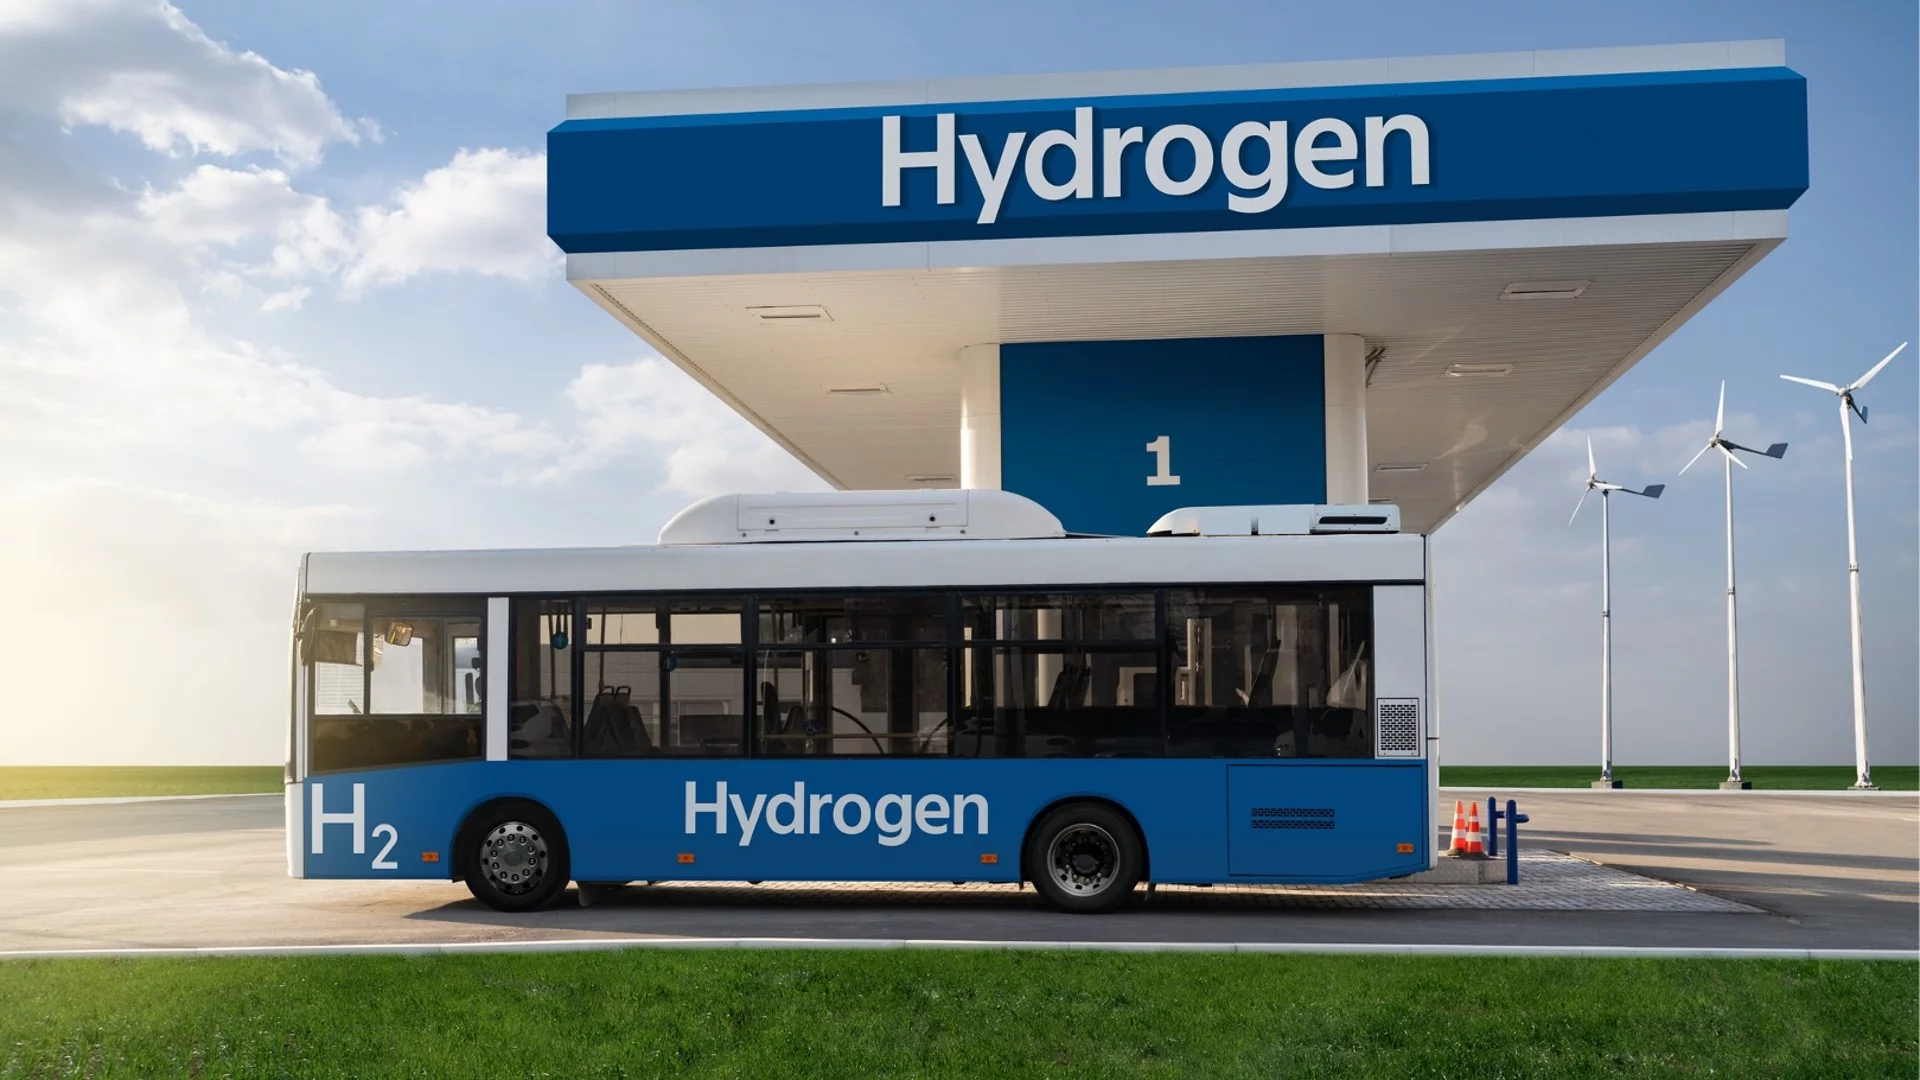 София става първият град на Балканите с водороден автобус 